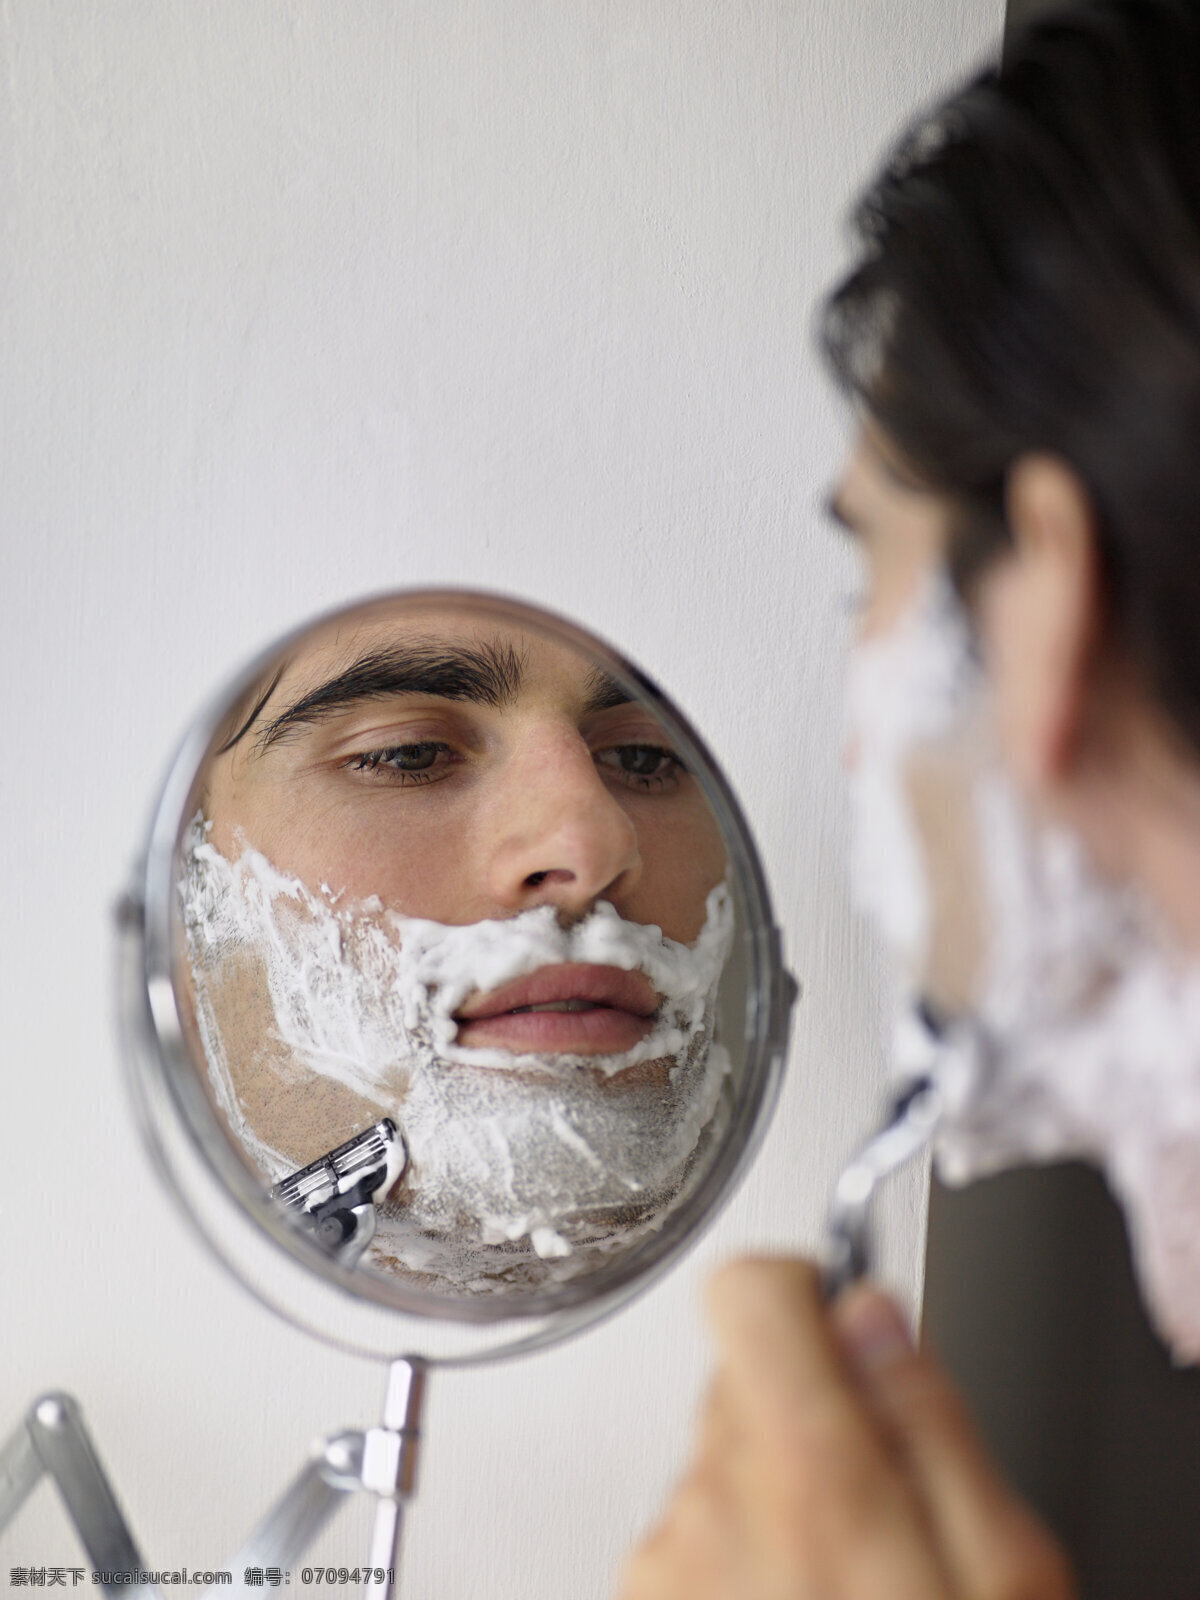 镜子 刮胡子 男人 泡沫 剃须刀 人物 情侣图片 人物图片